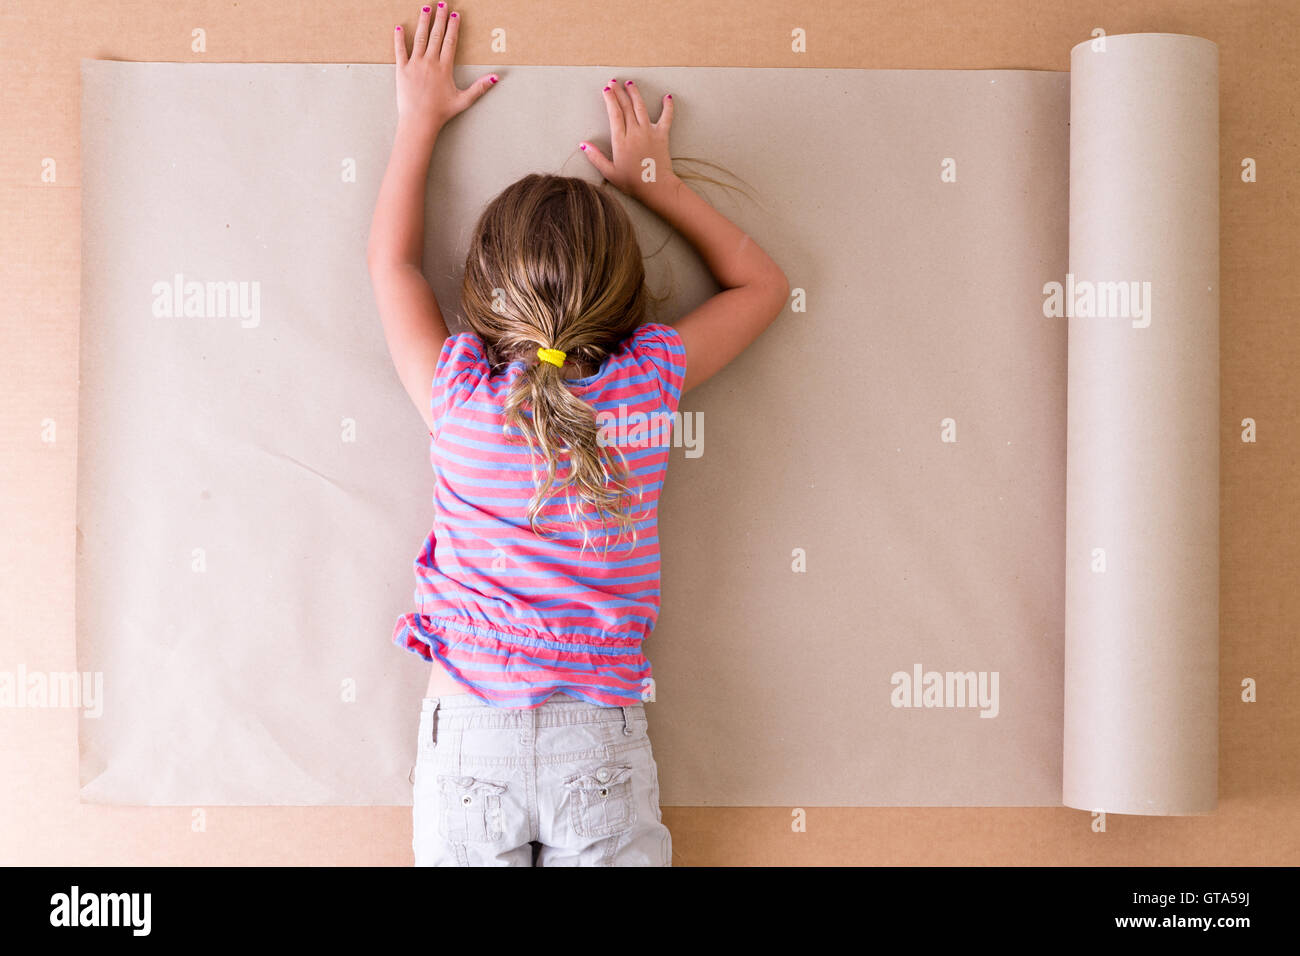 Premuto giovane bambina artista sdraiato a faccia in giù sulla carta come lei le lotte per venire con idee originali e creative des Foto Stock